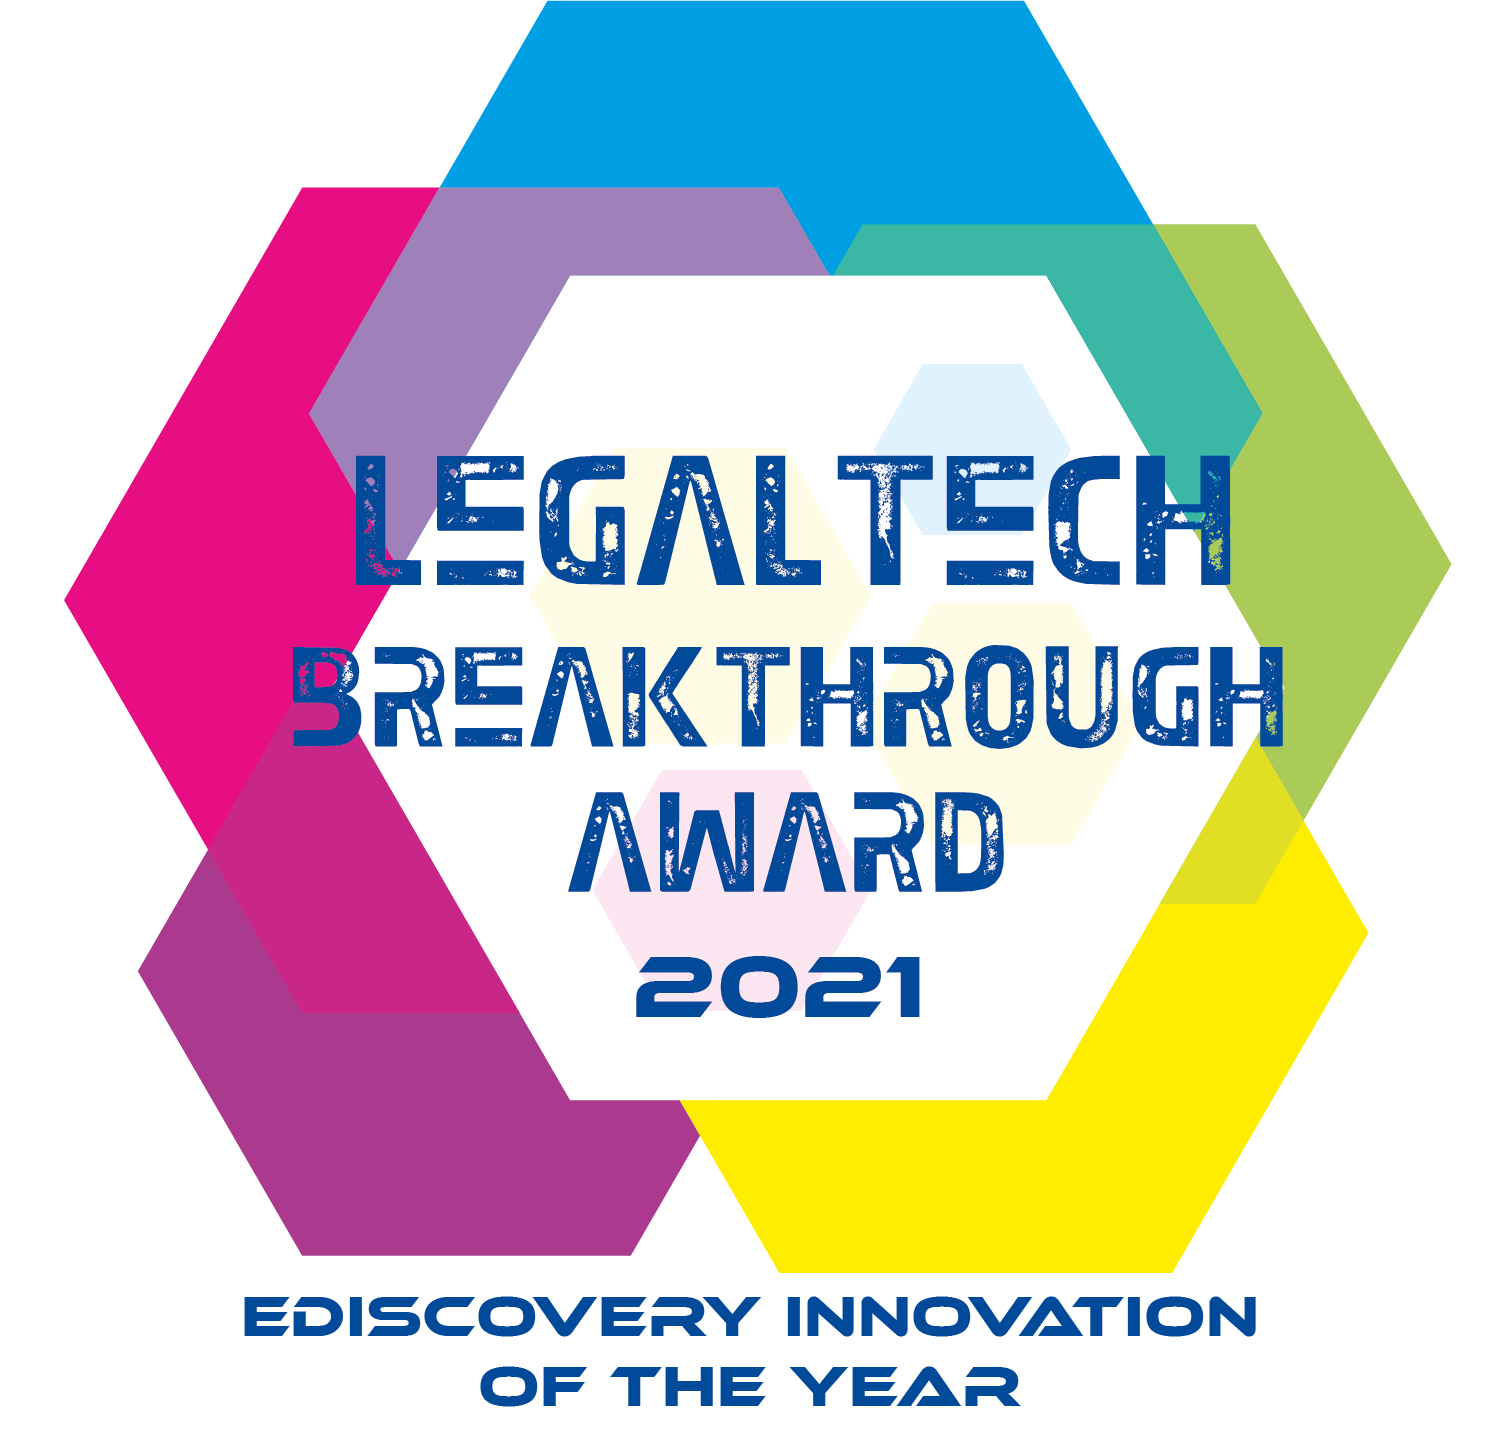 2021 LegalTech Awards